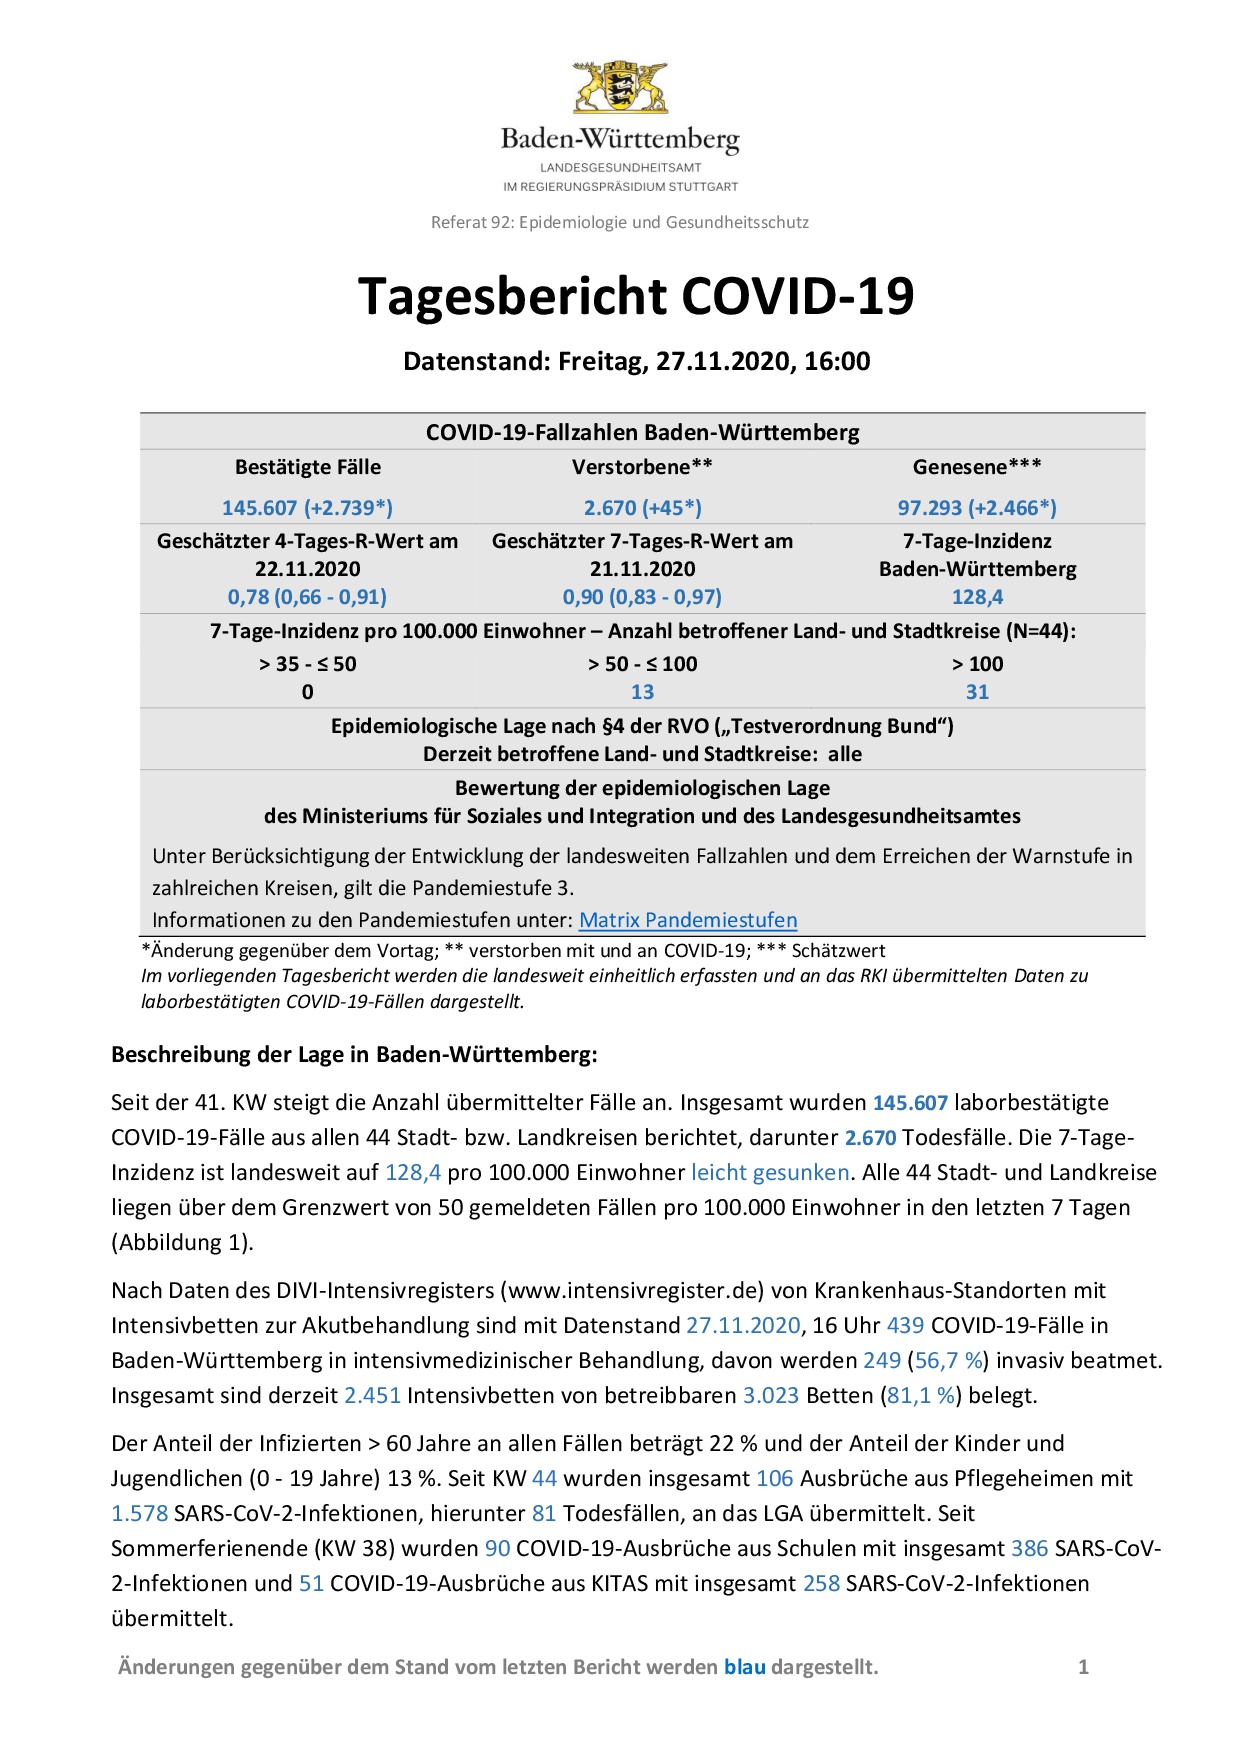 COVID-19 Tagesbericht (27.11.2020) des Landesgesundheitsamts Baden-Württemberg – (ausführlicher)